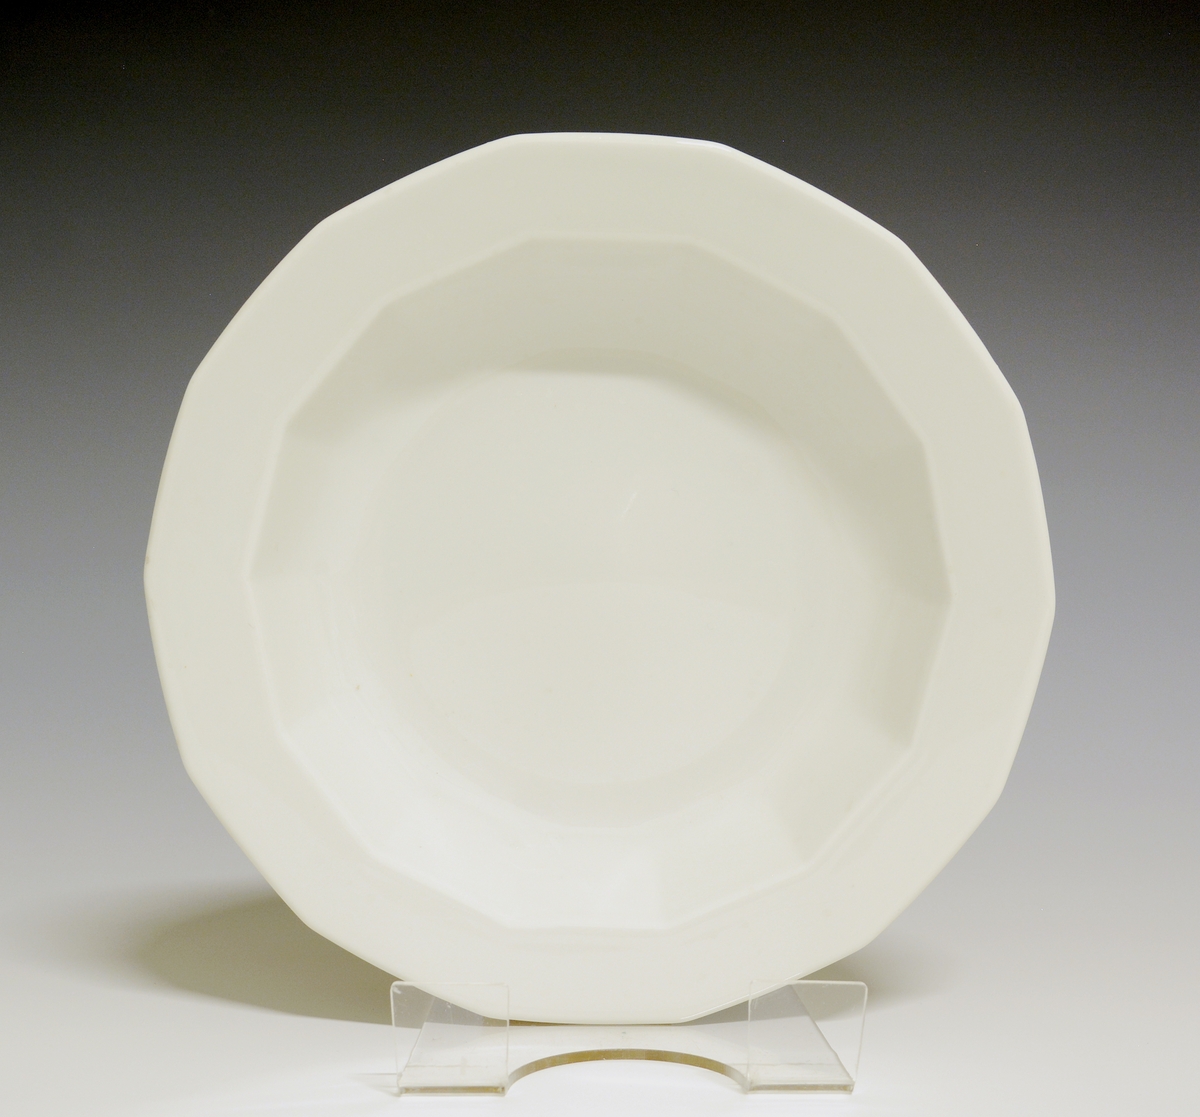 Mangekantet dyp tallerken av porselen med hvit glasur. 
Modell: Octavia, tegnet av Grete Rønning i 1977.
